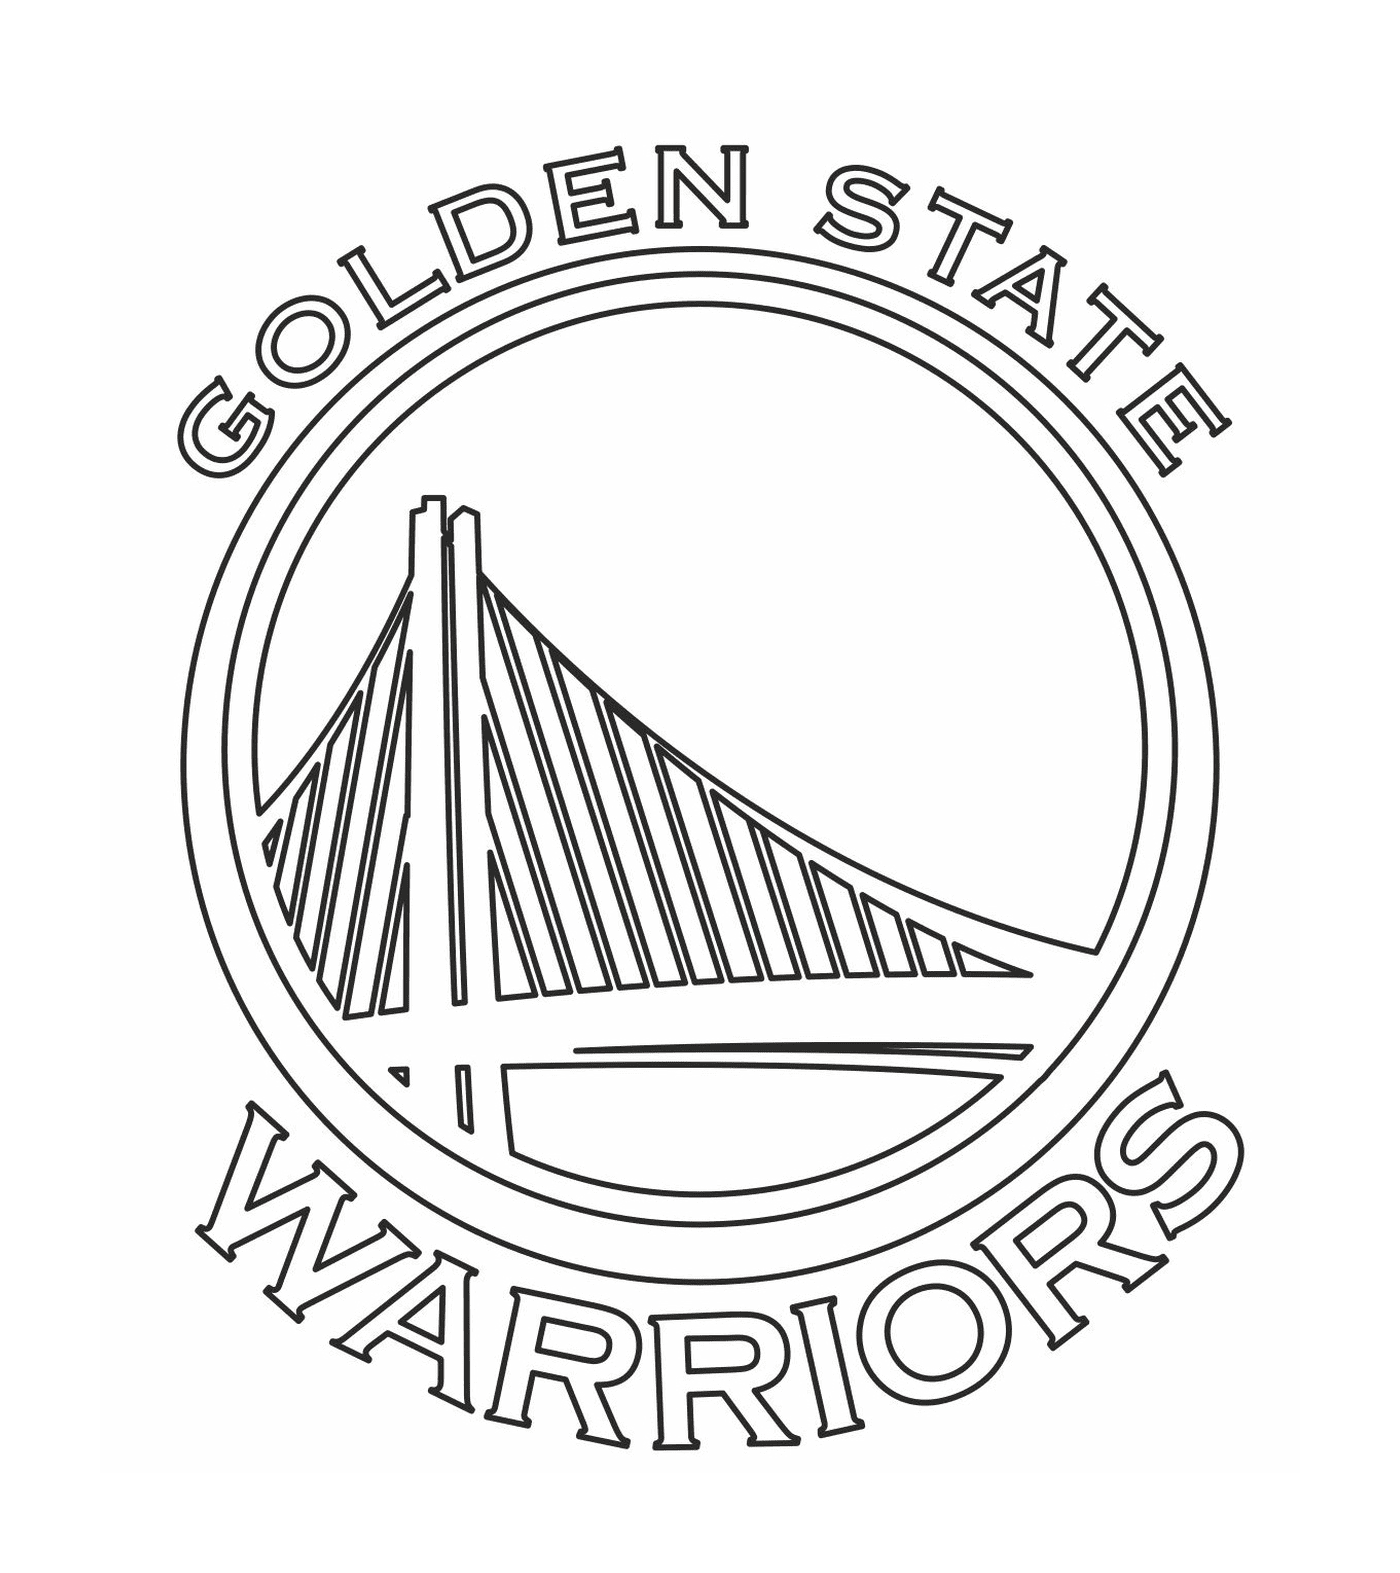   Le logo des Golden State Warriors de la NBA 